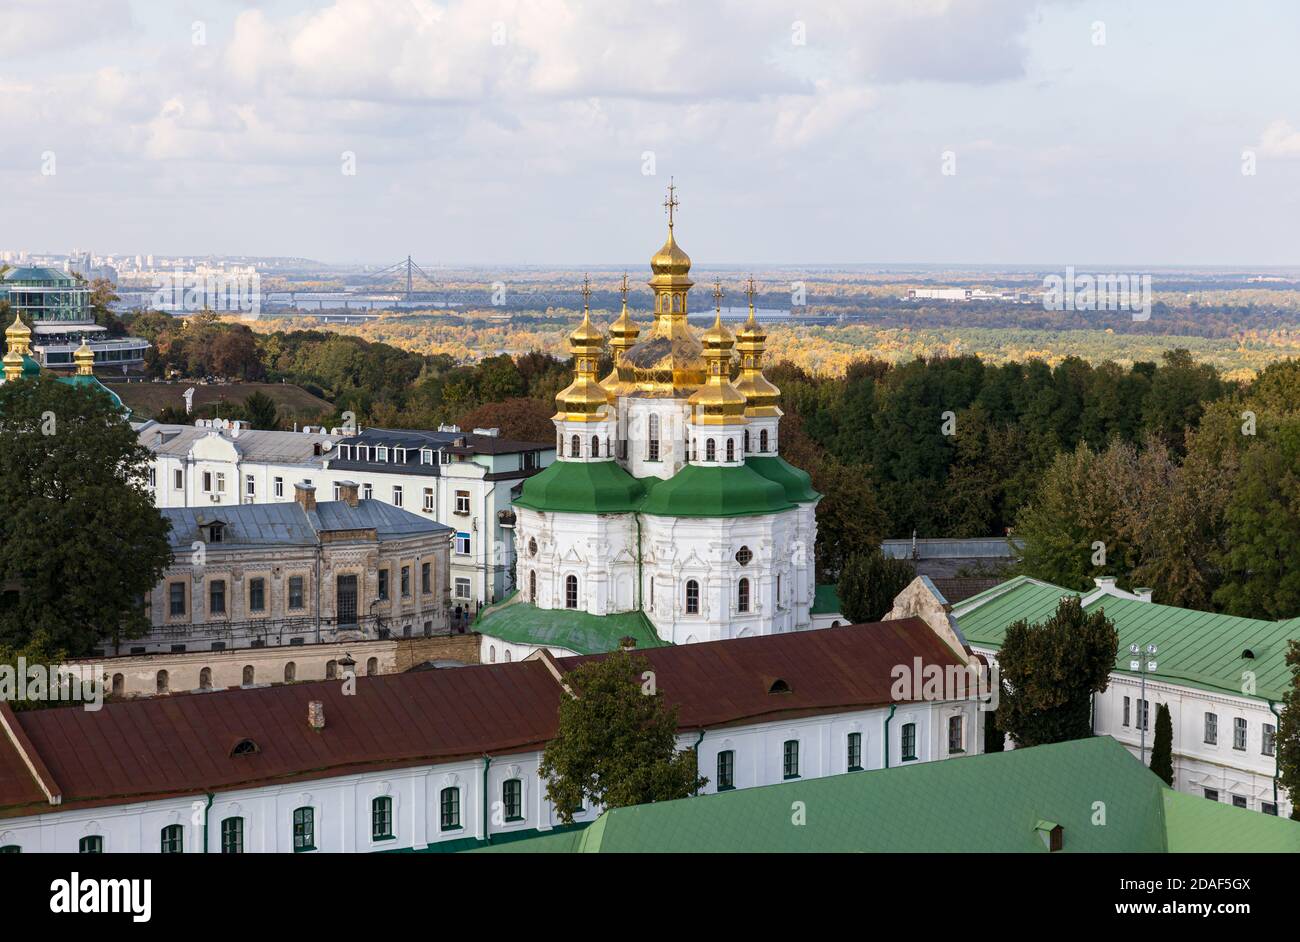 Kiev, Ucraina - 29 settembre 2018: Vista aerea della città di Kiev con chiese, edifici nuovi e vecchi. Architettura antica e moderna nella capitale Ucraina, Foto Stock